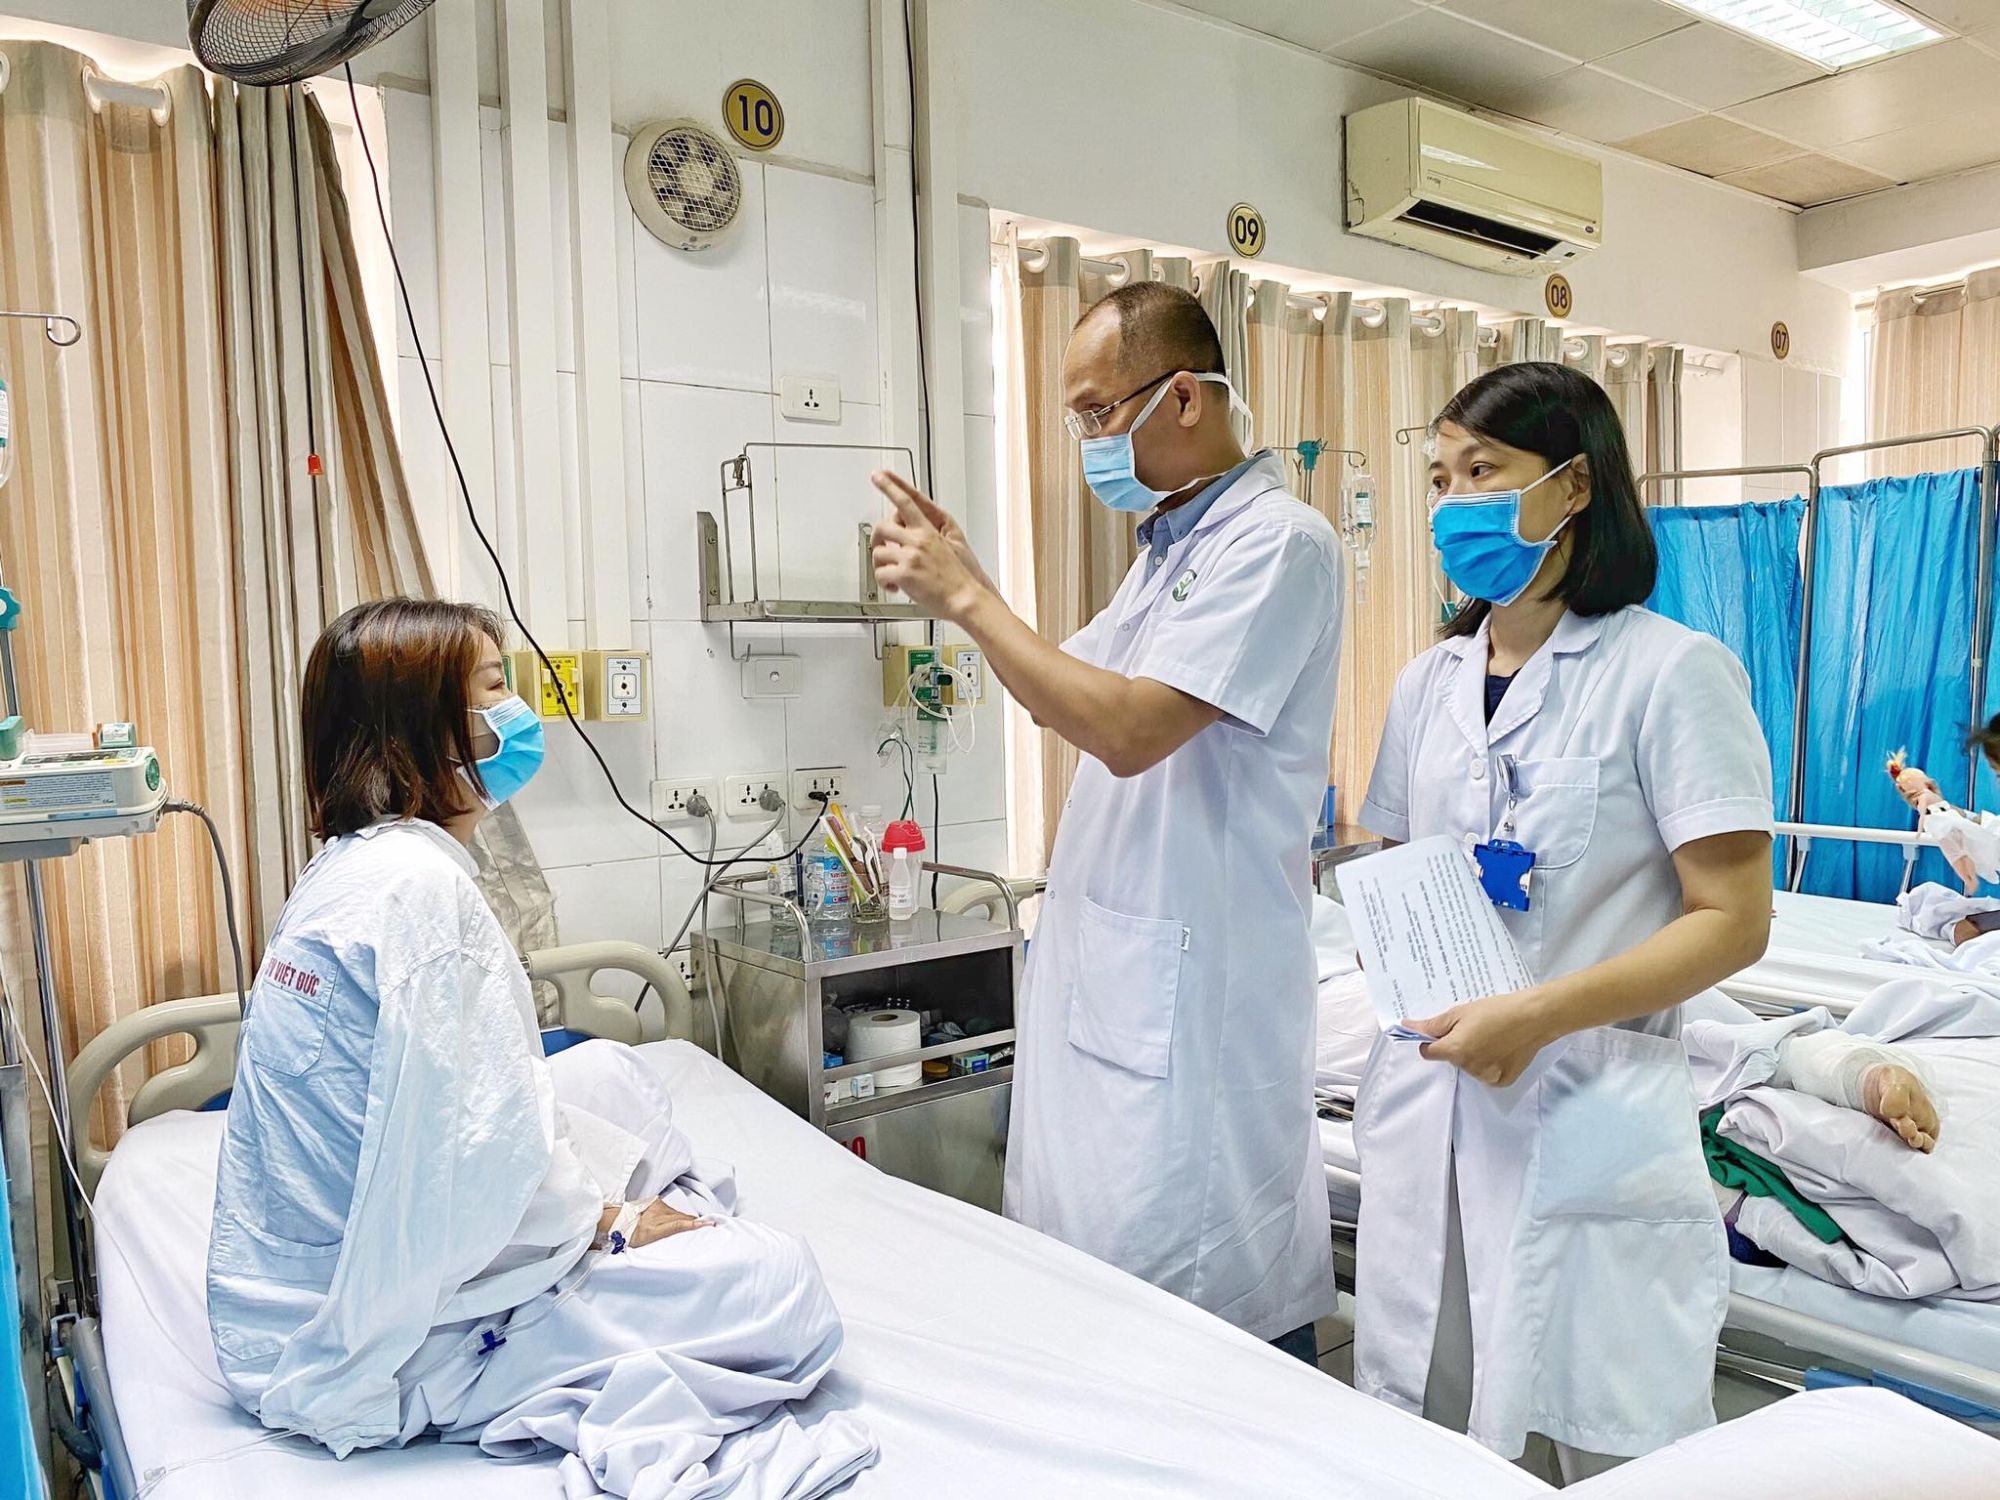 Tiêm filler giá rẻ ở spa, cô gái 27 tuổi hoảng loạn, đau đớn vì suýt mù mắt - Bệnh viện Việt Đức